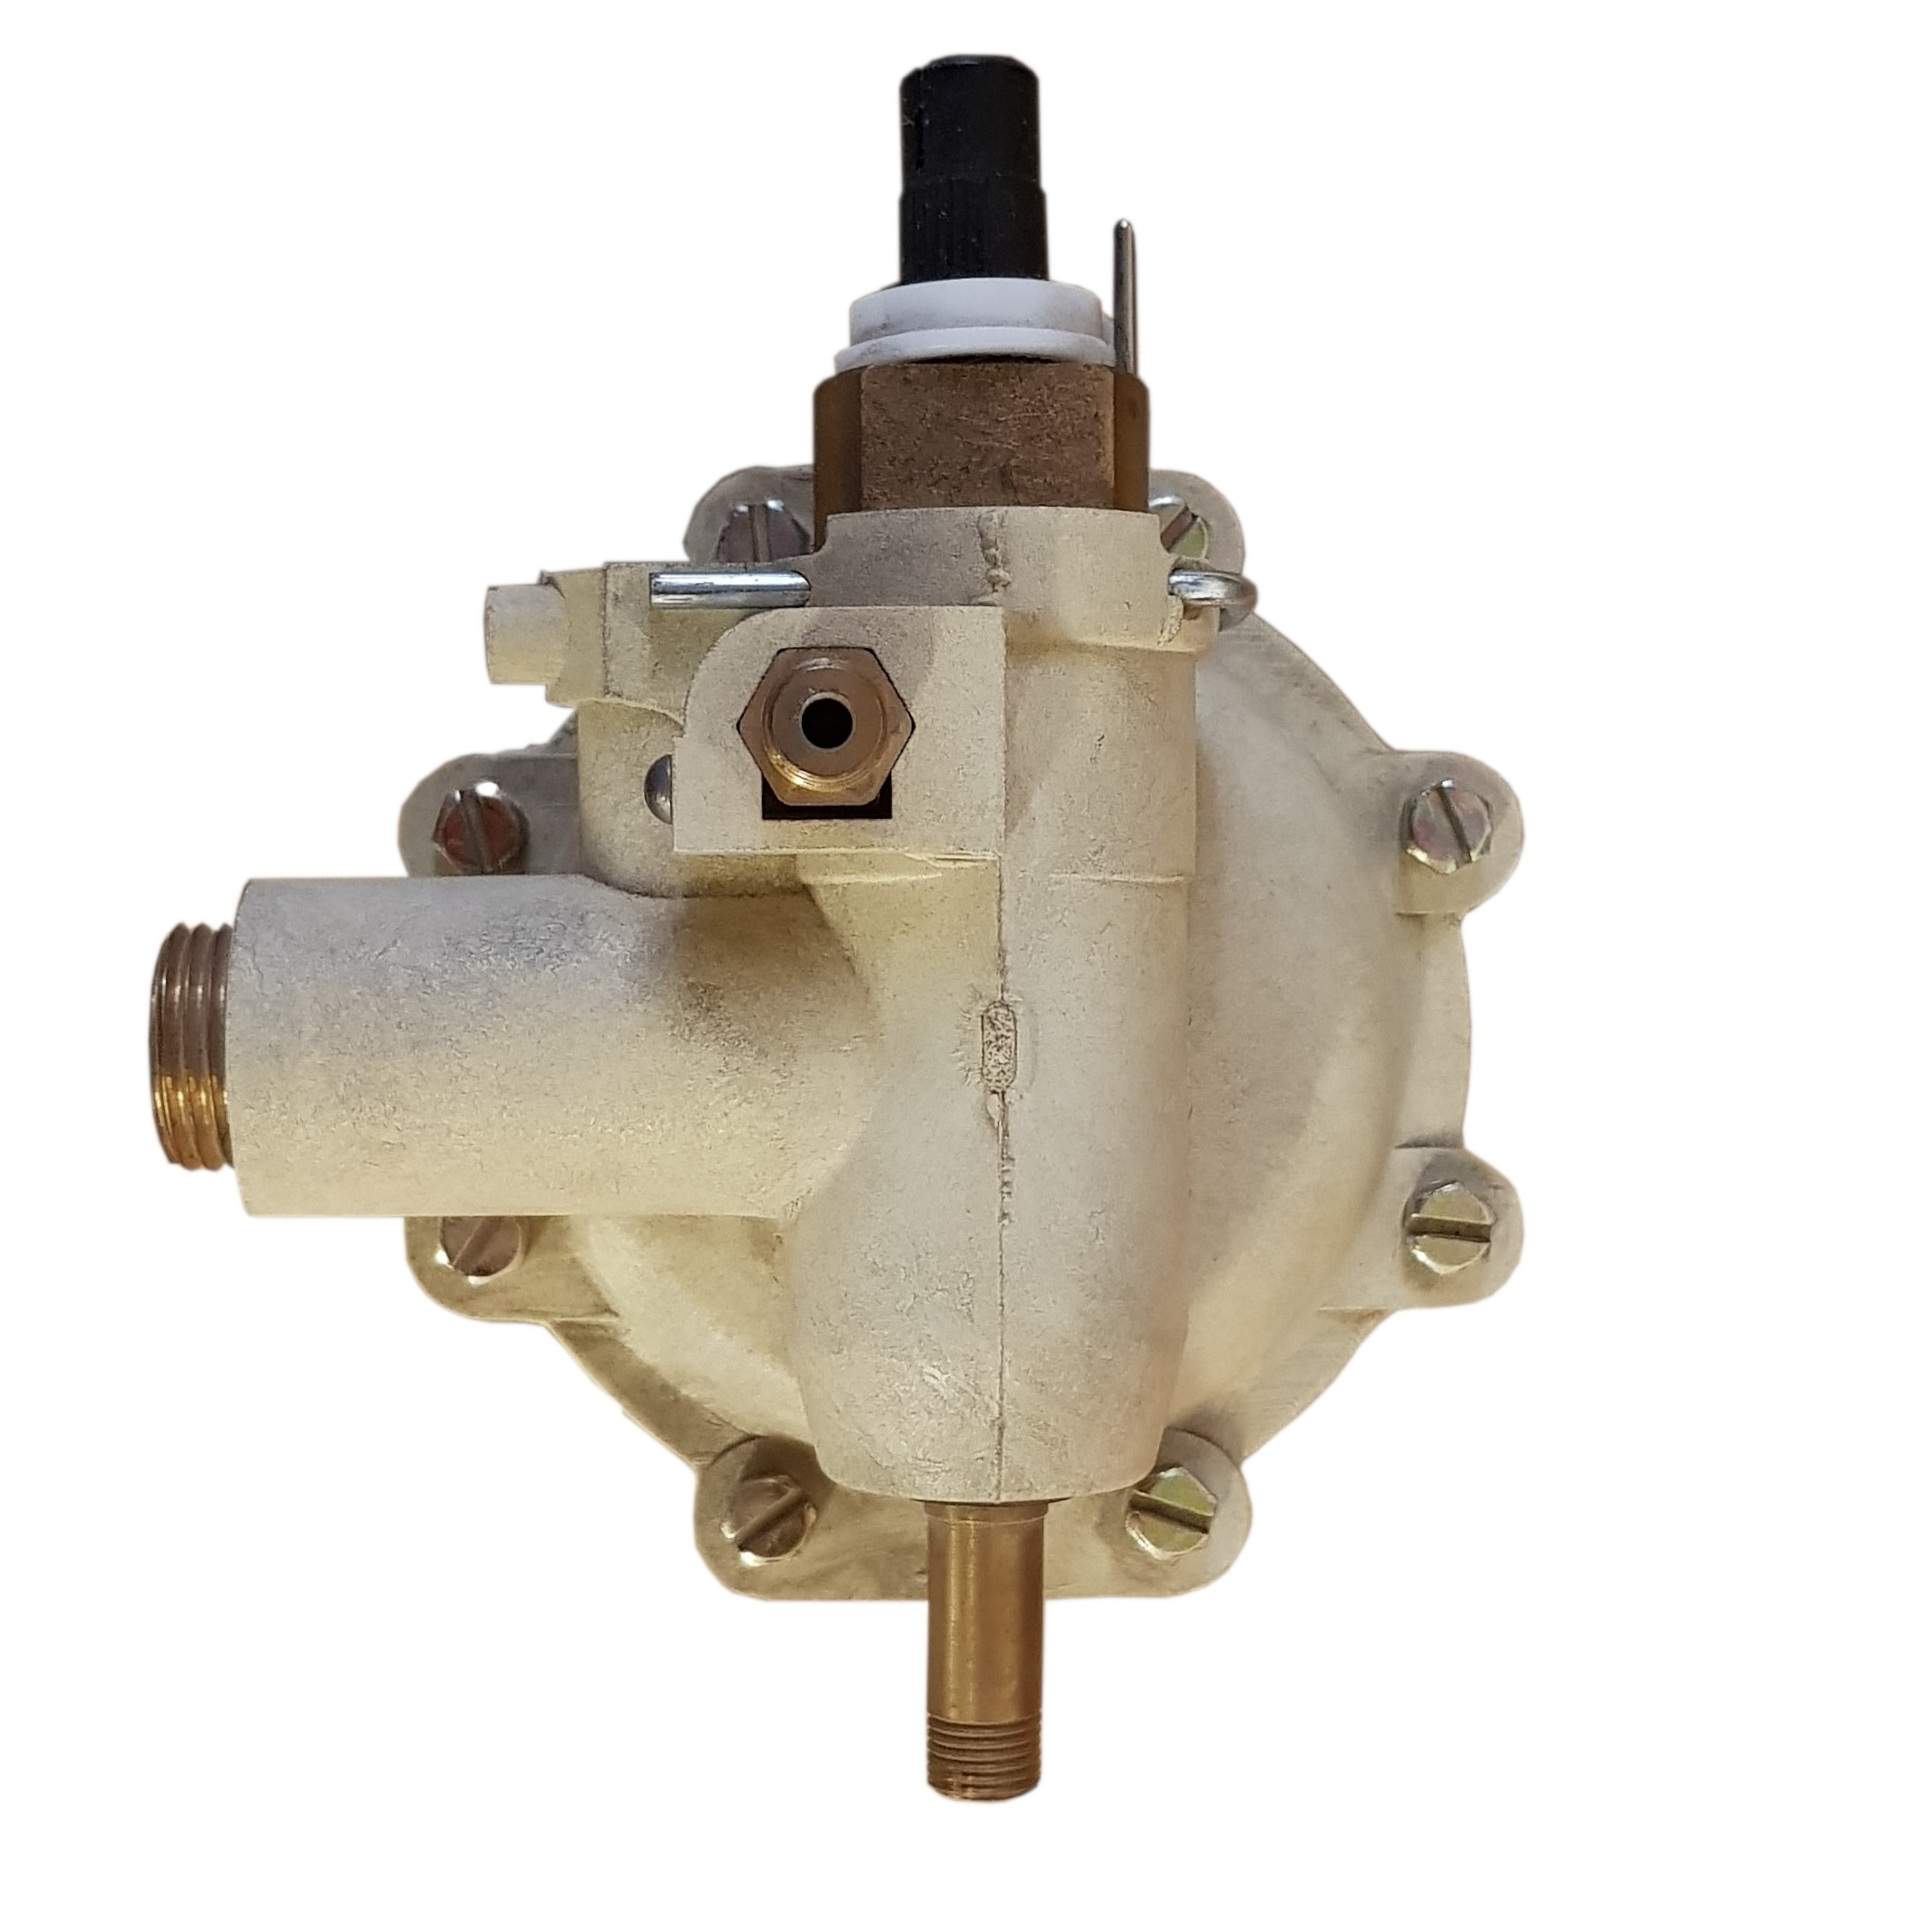 Válvula de agua termostática CELTIC mixta no RSC